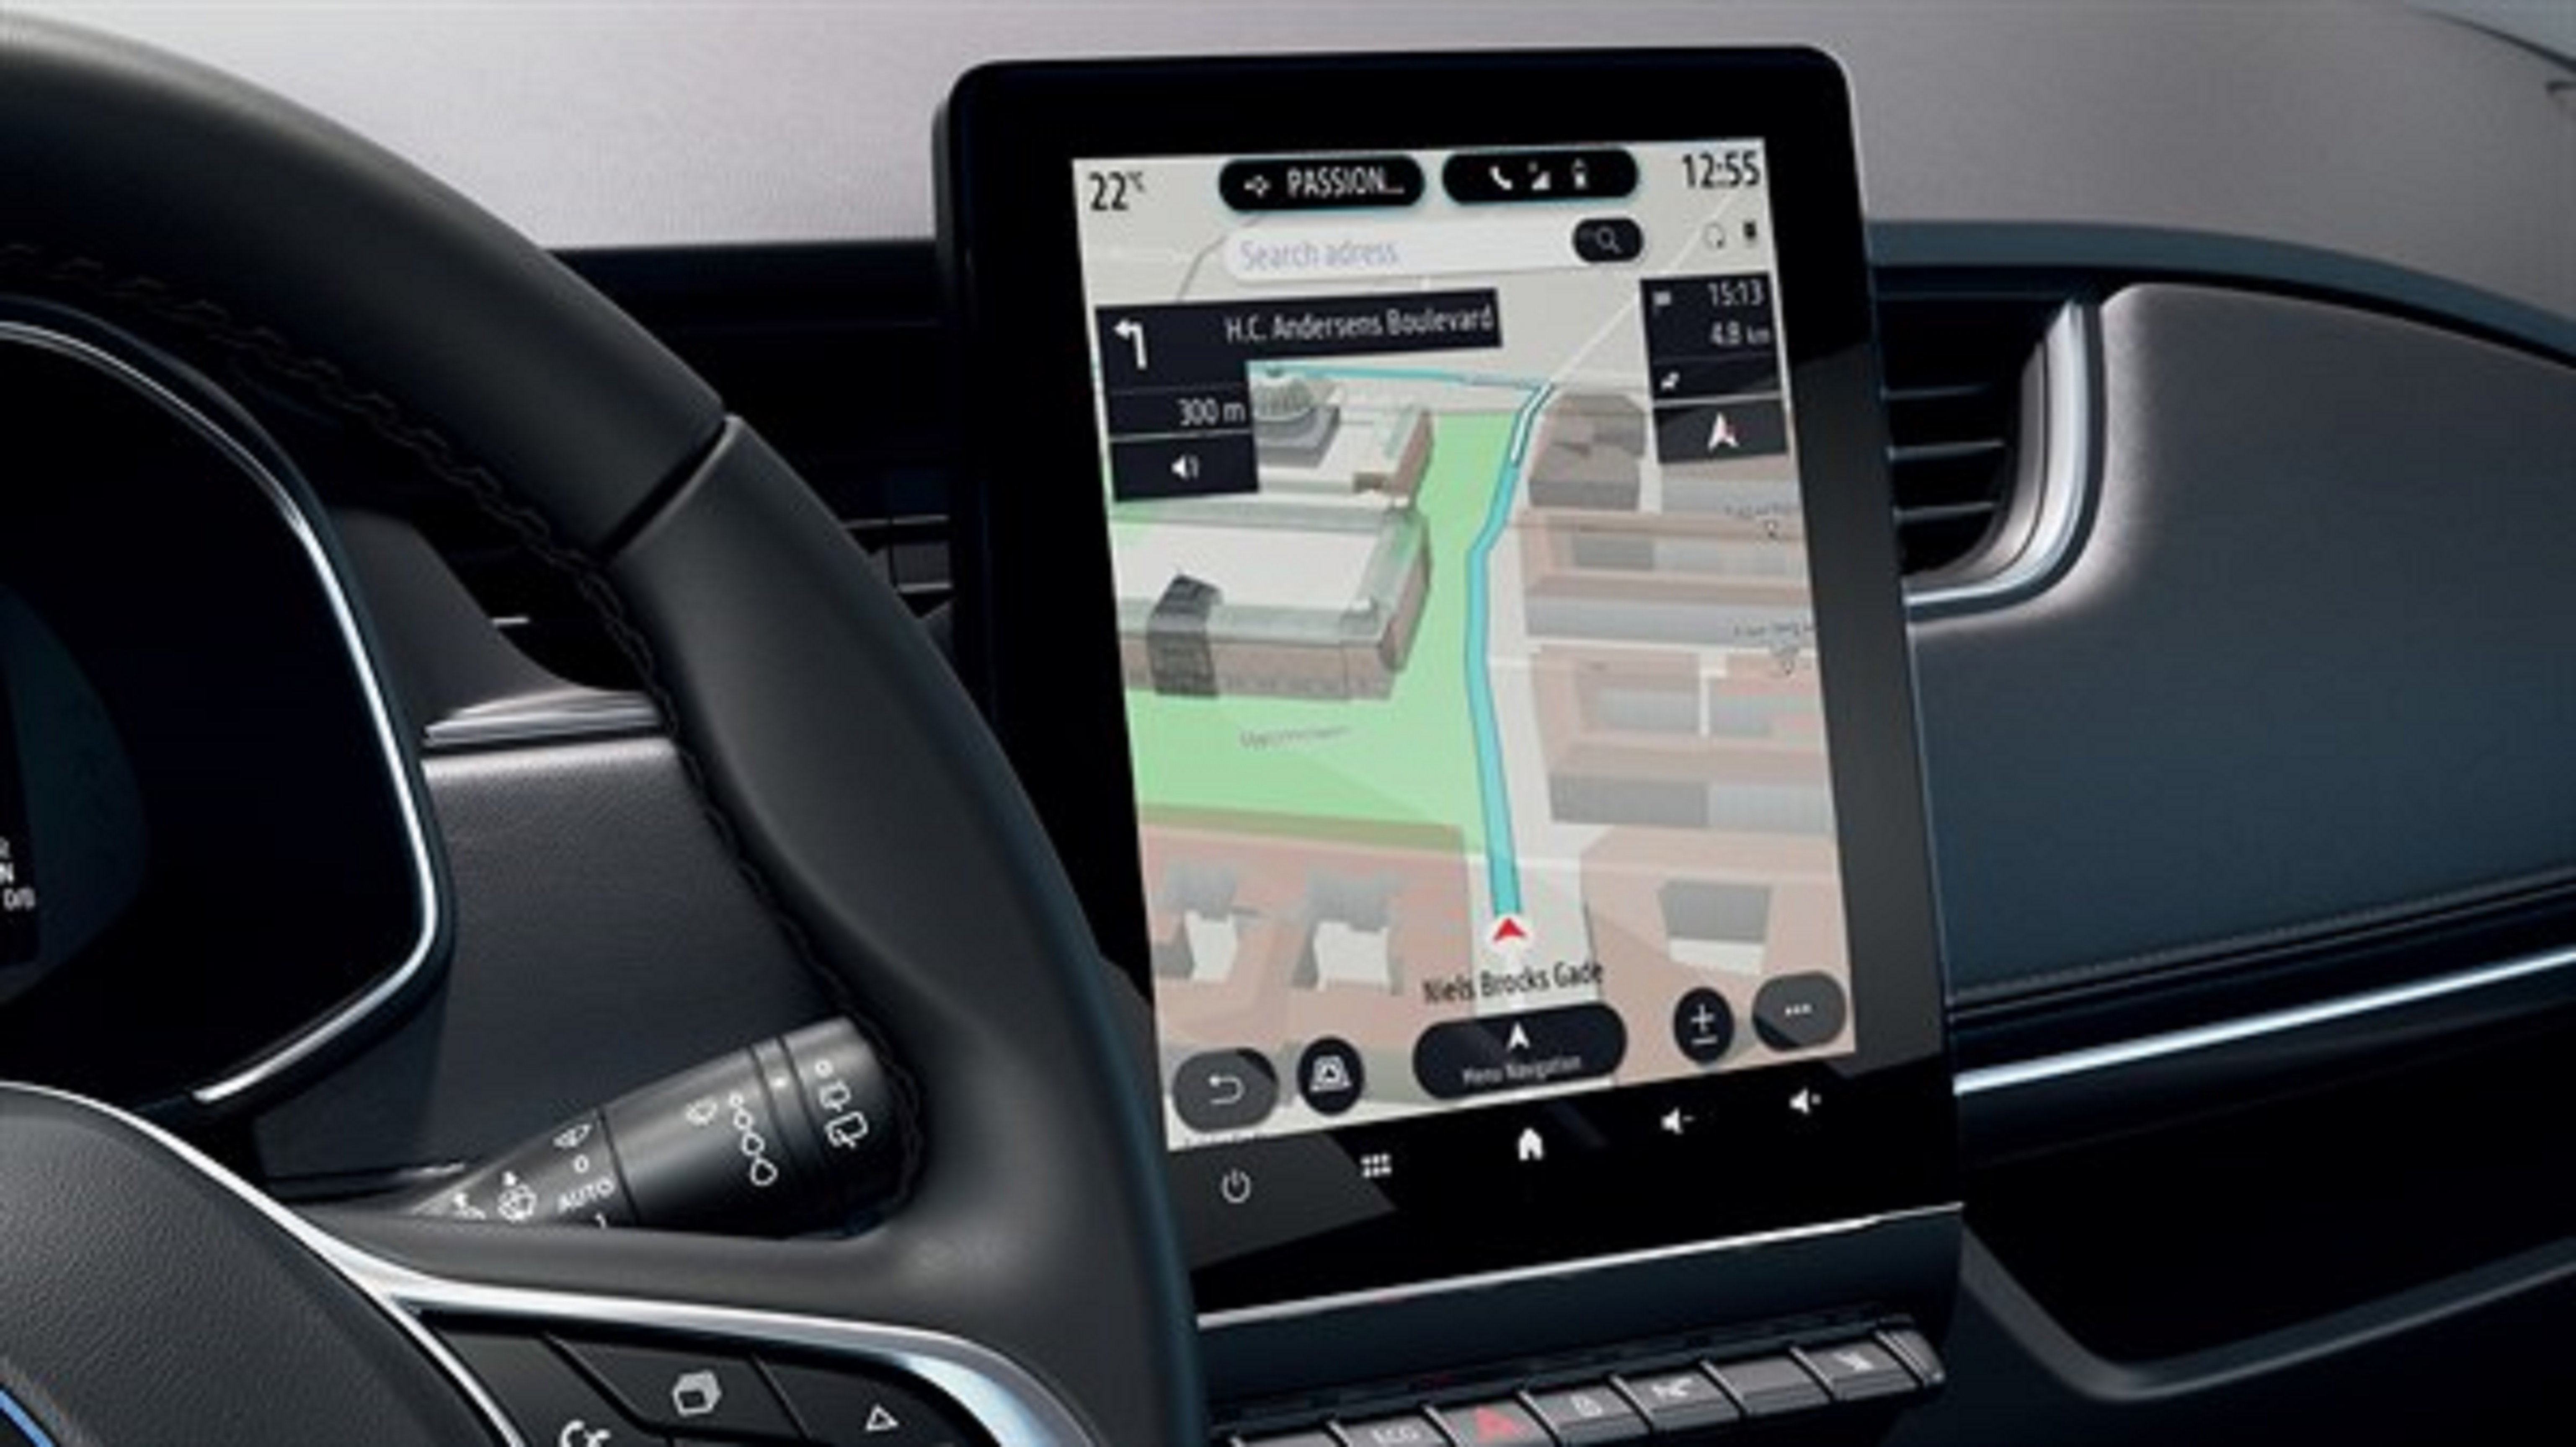 Waze navigation on Renault vehilce infotainment screen